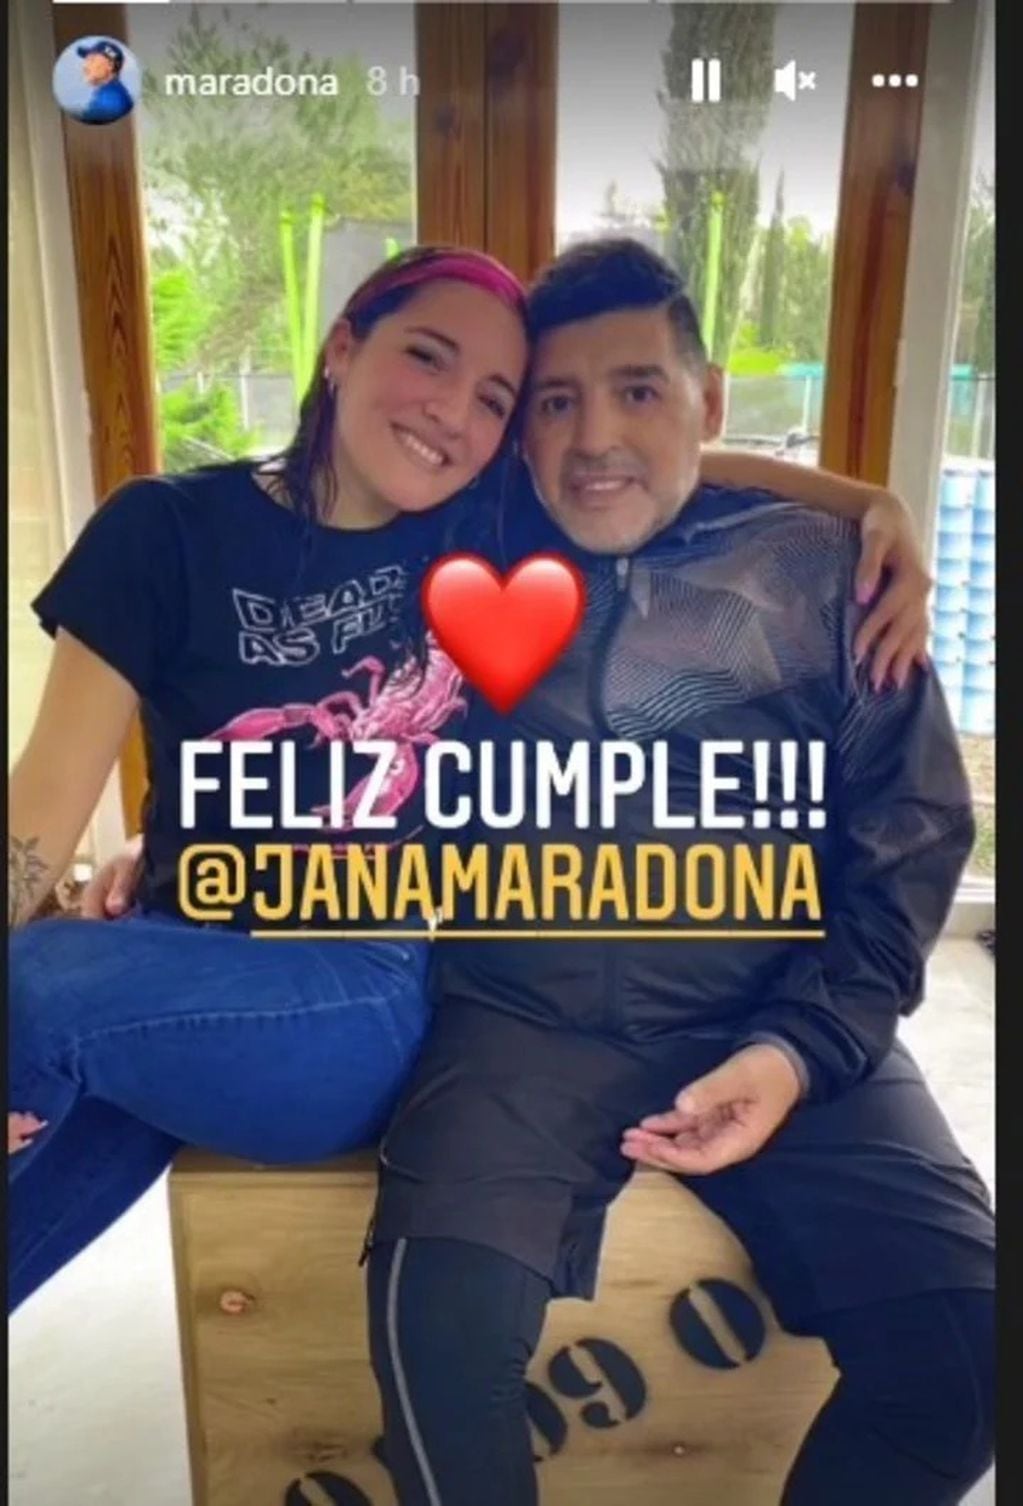 La cuenta de Instagram de Maradona le dedicó a Jana un tierno mensaje de cumpleaños.